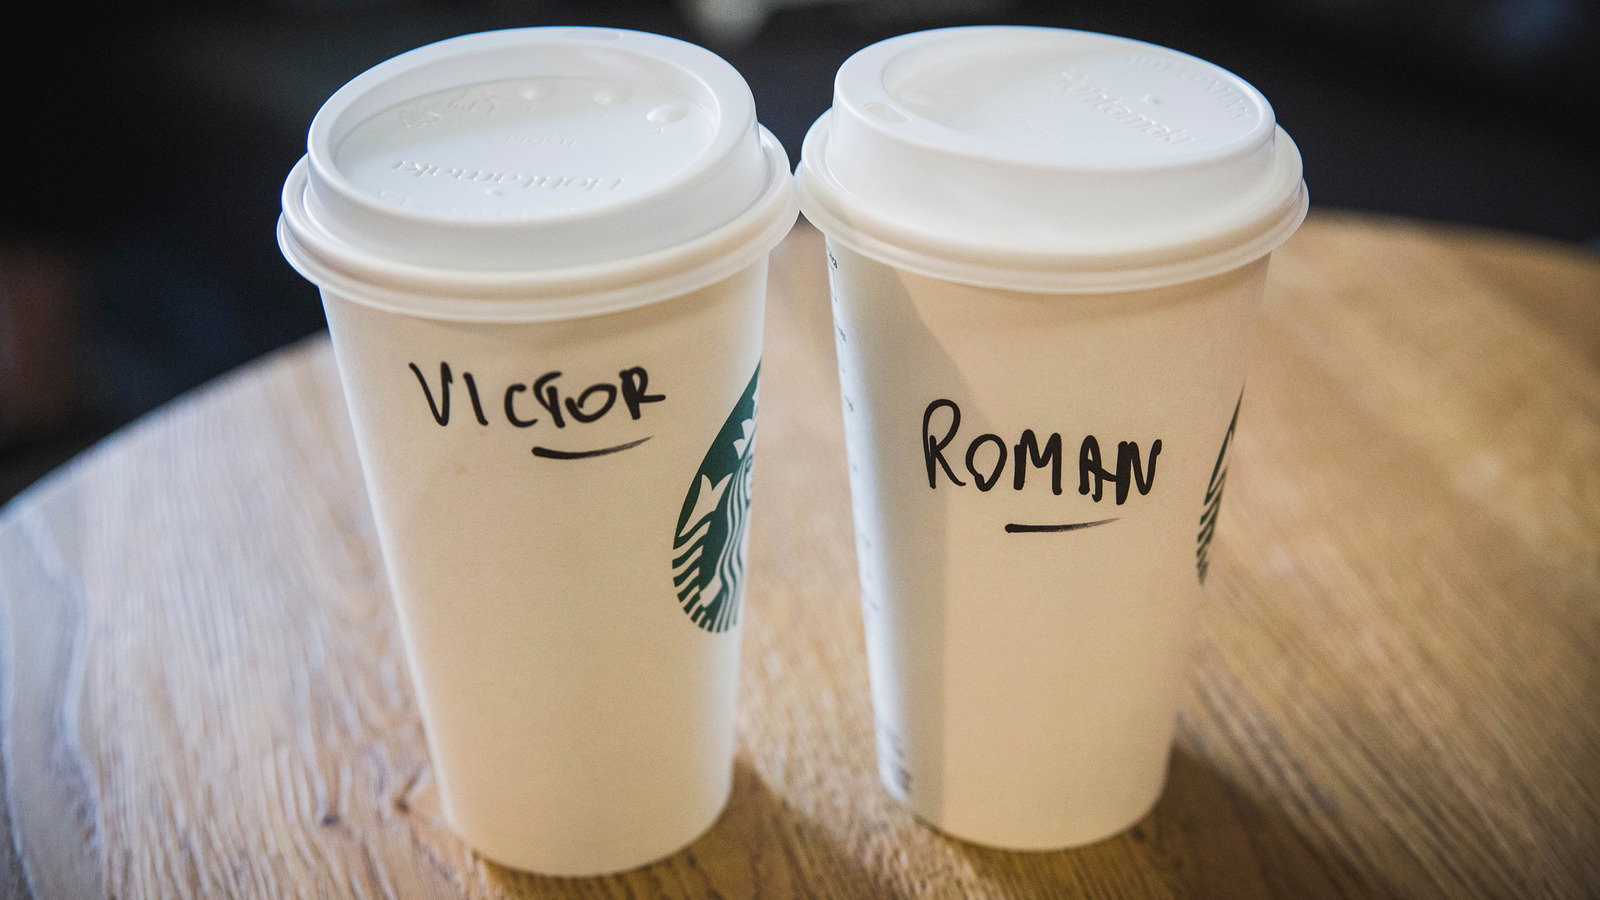 Your Name on a Custom Starbucks Coffee Mug